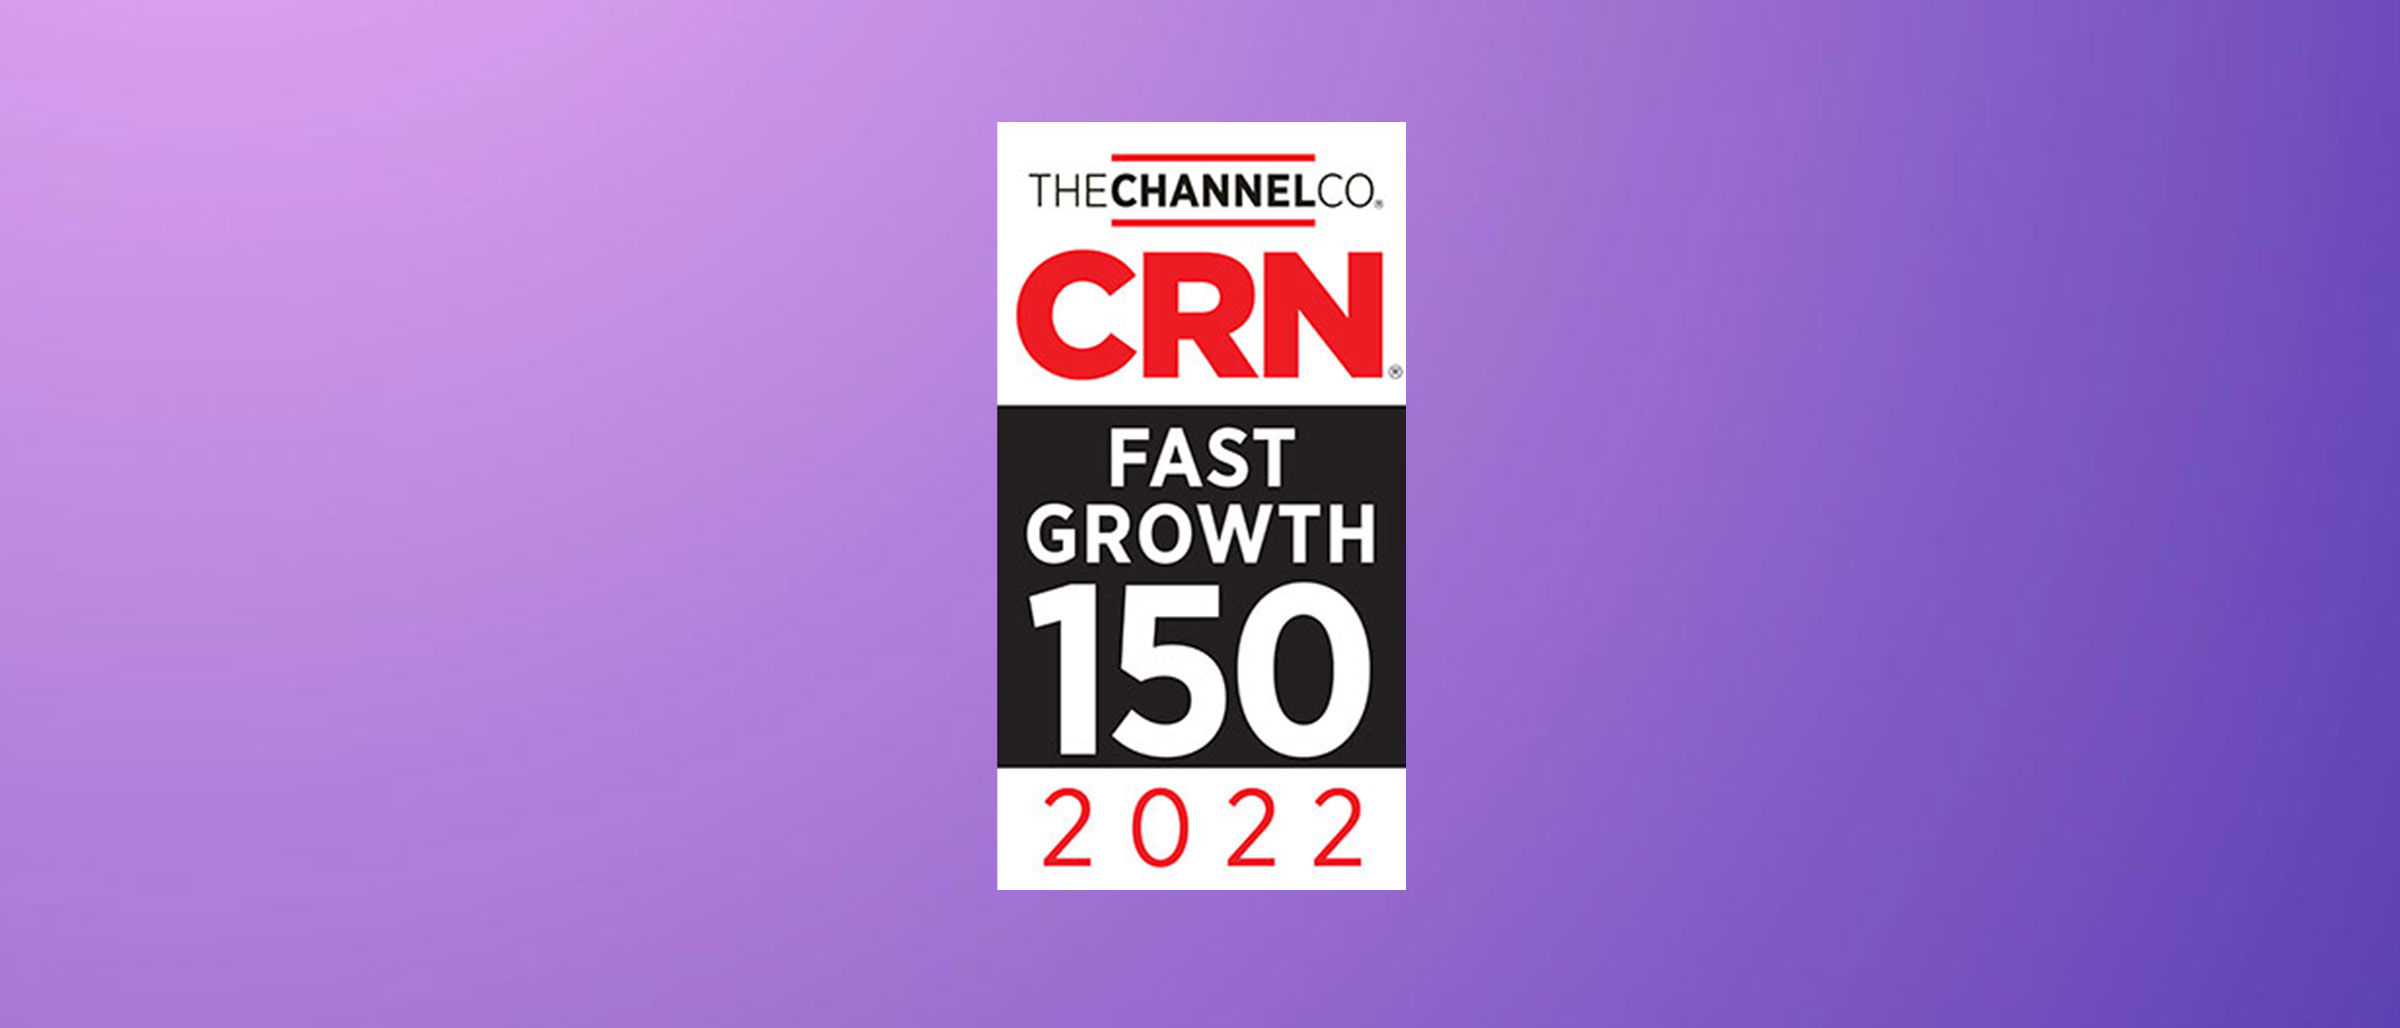 CRN Fast Growth 150 2022 Award